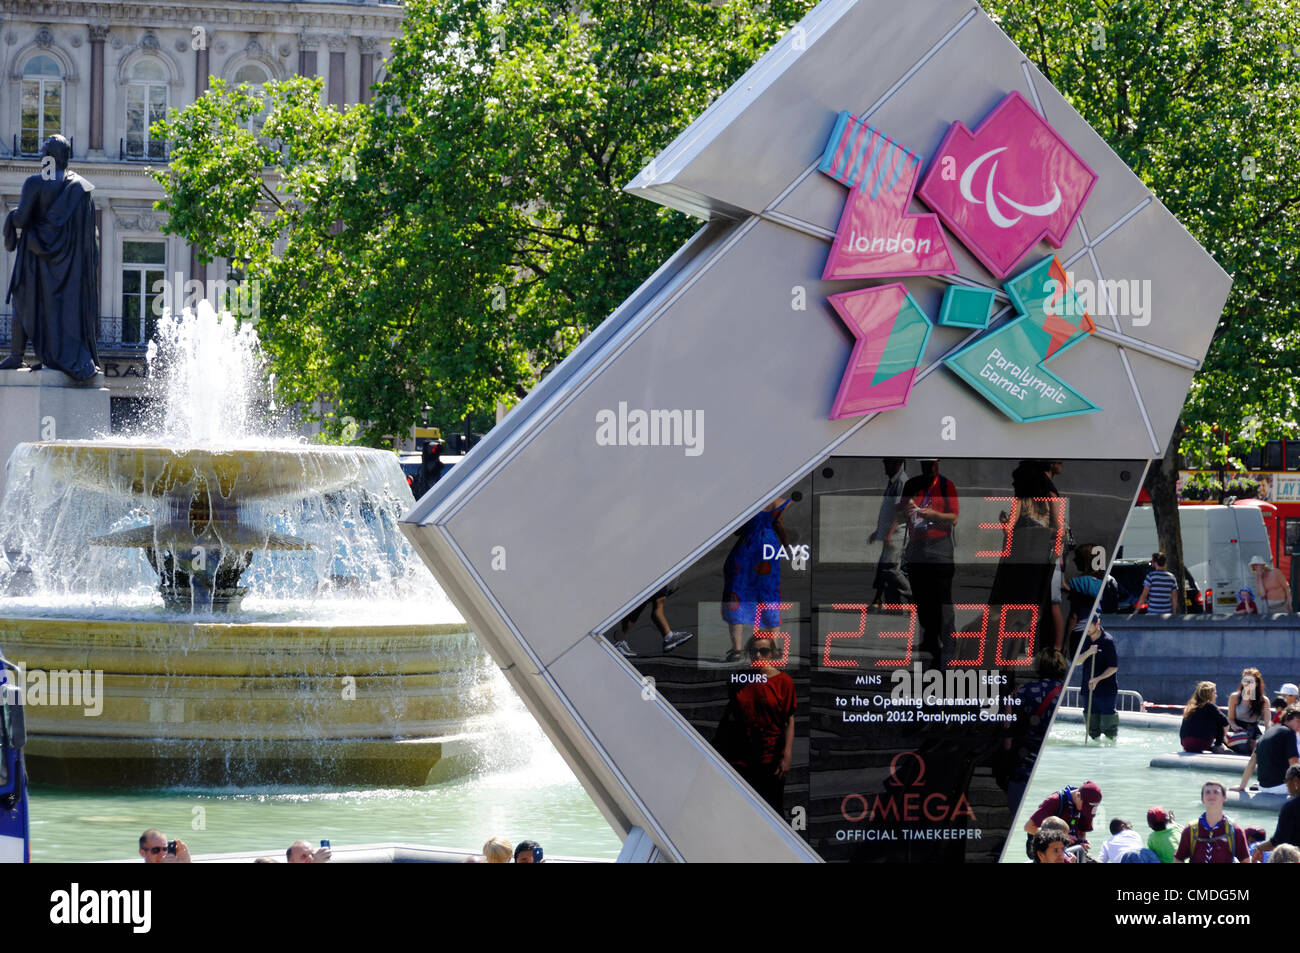 LONDON, UK, lundi 23 juillet, 2012. L'horloge Omega sur Trafalgar Square se lit 37 jours de Jeux Paralympiques de Londres 2012. Les Jeux Olympiques de Londres en 2012 sera officiellement ouverte le vendredi 27 juillet 2012 à 21h00. Banque D'Images